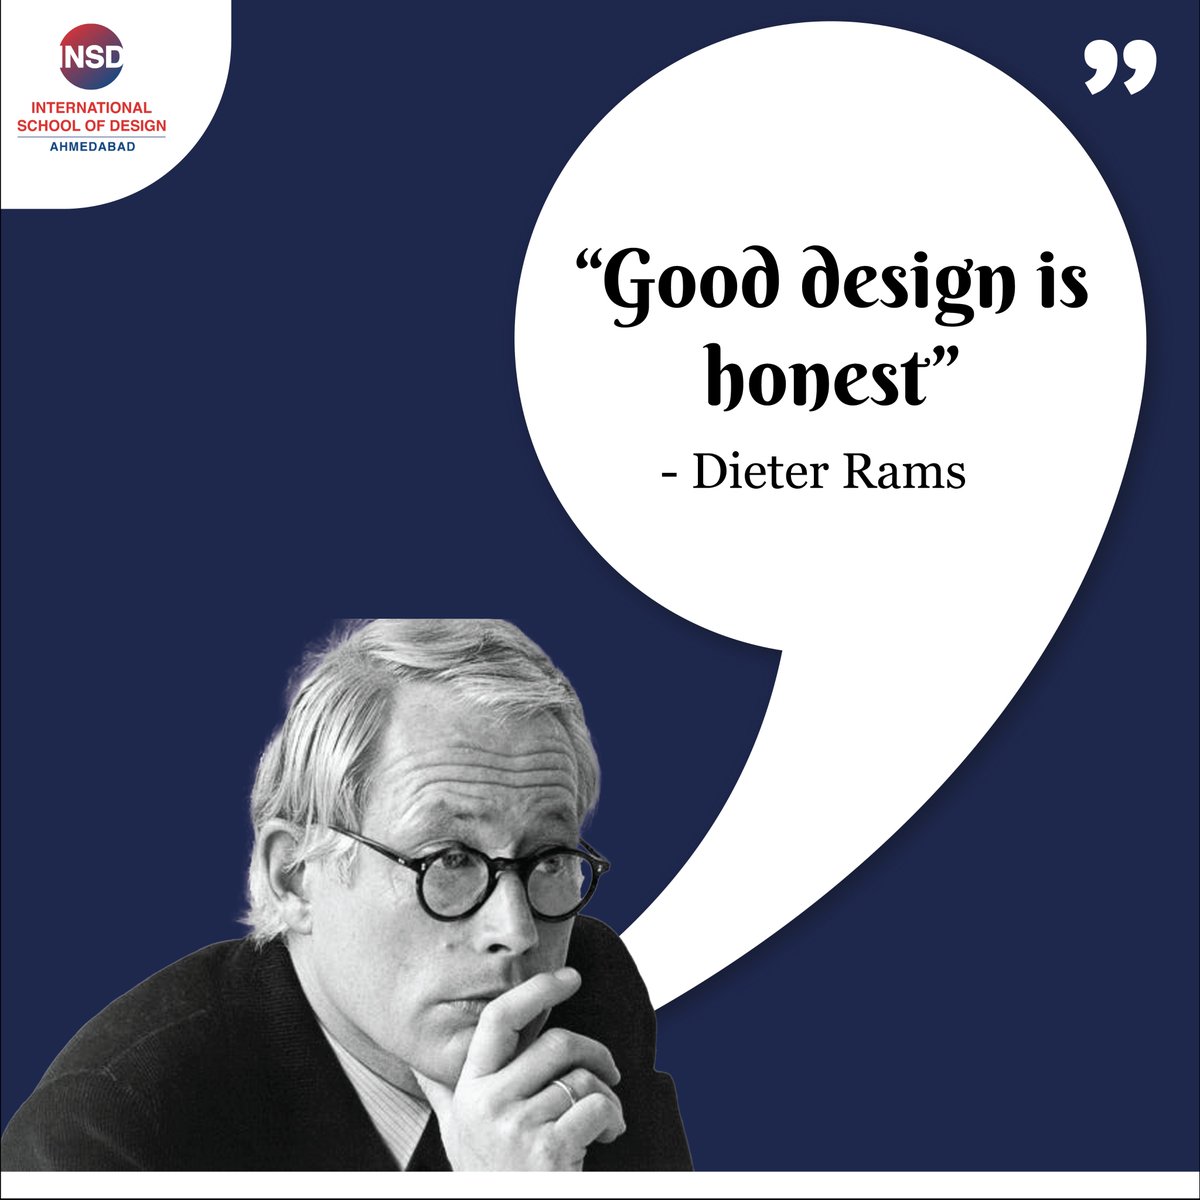 'Good design is honest' - Dieter Rams

#designquotes #art #artist #designer #quotes #quoteoftheday #fashiondesign #insdahmedabad #ahmeadbad #gujarat #interiordesign